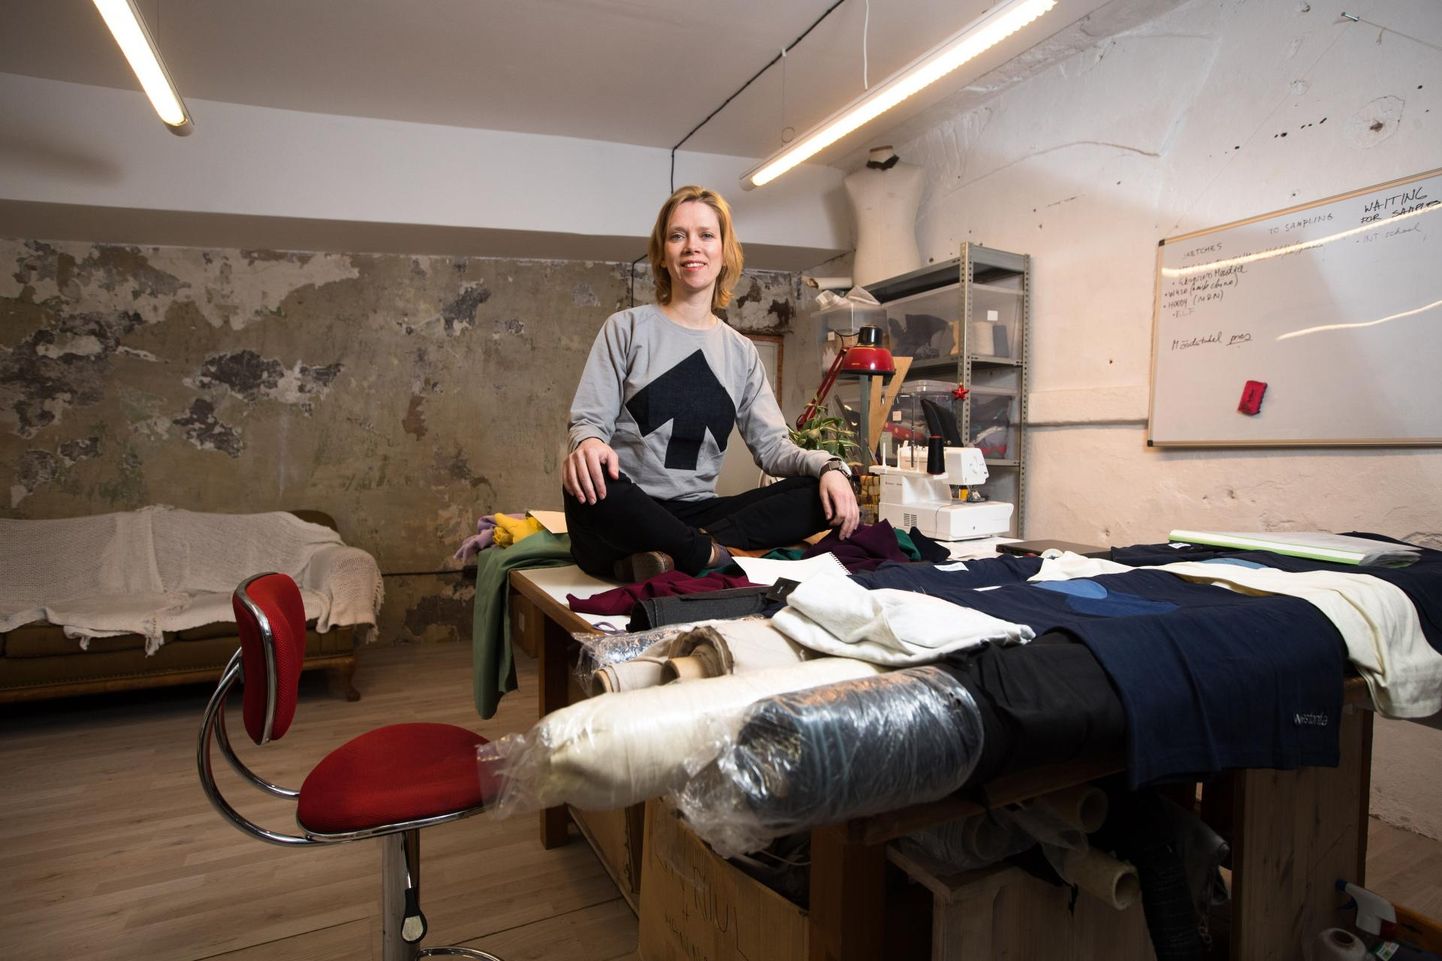 Eesti Kunstiakadeemia vanemteadur Reet Aus on tuntud oma tekstiilmaterjalide taaskasutuse lahenduste poolest nii Eestis kui mujalgi. 